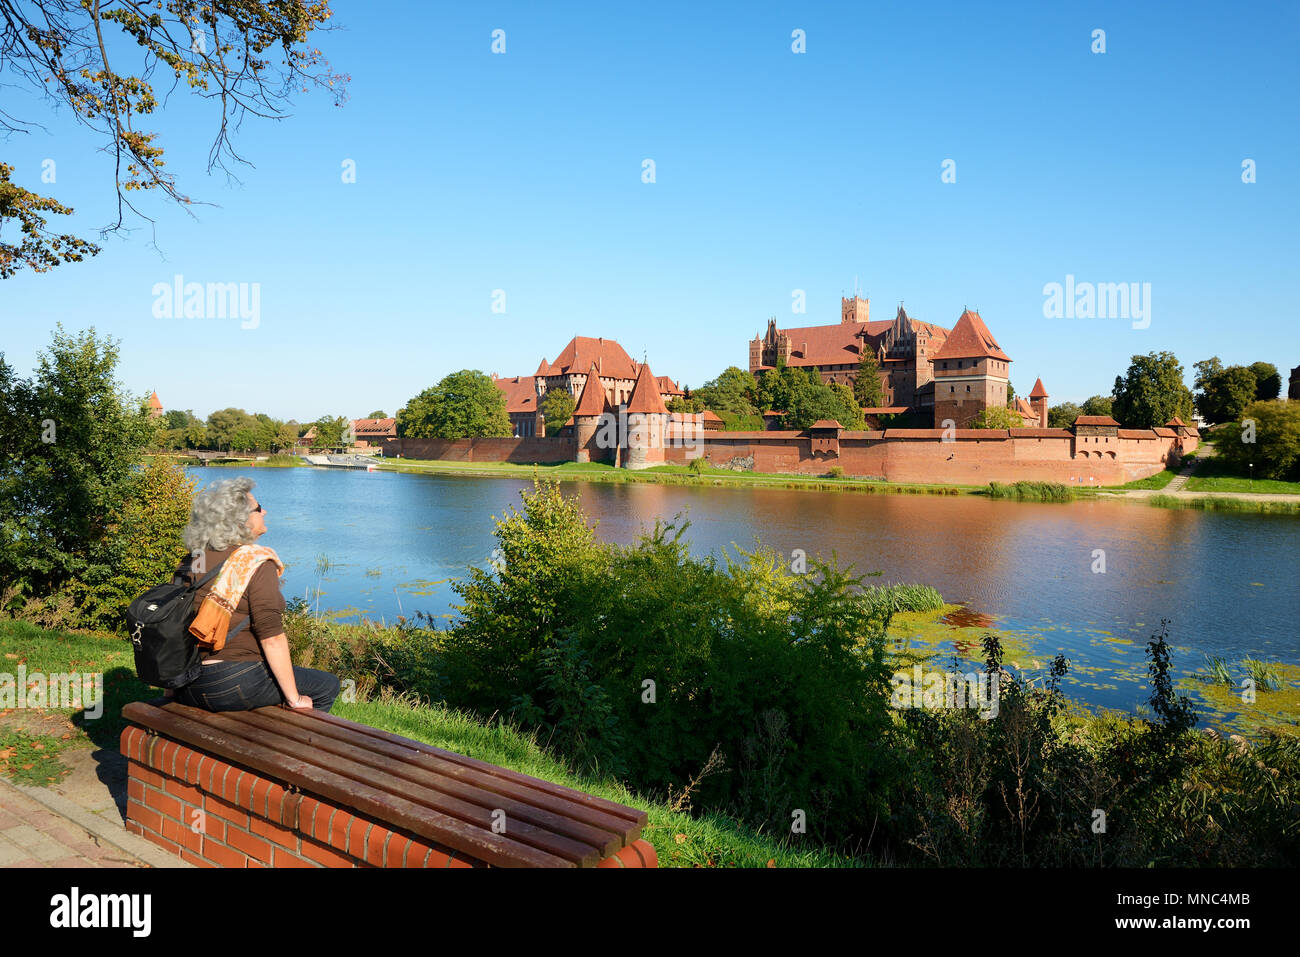 Le 13e siècle château de Malbork, fondée par les Chevaliers de l'Ordre Teutonique, Site du patrimoine mondial de l'Unesco. Marienburg (Mary's Castle). Occidentale, Po Banque D'Images